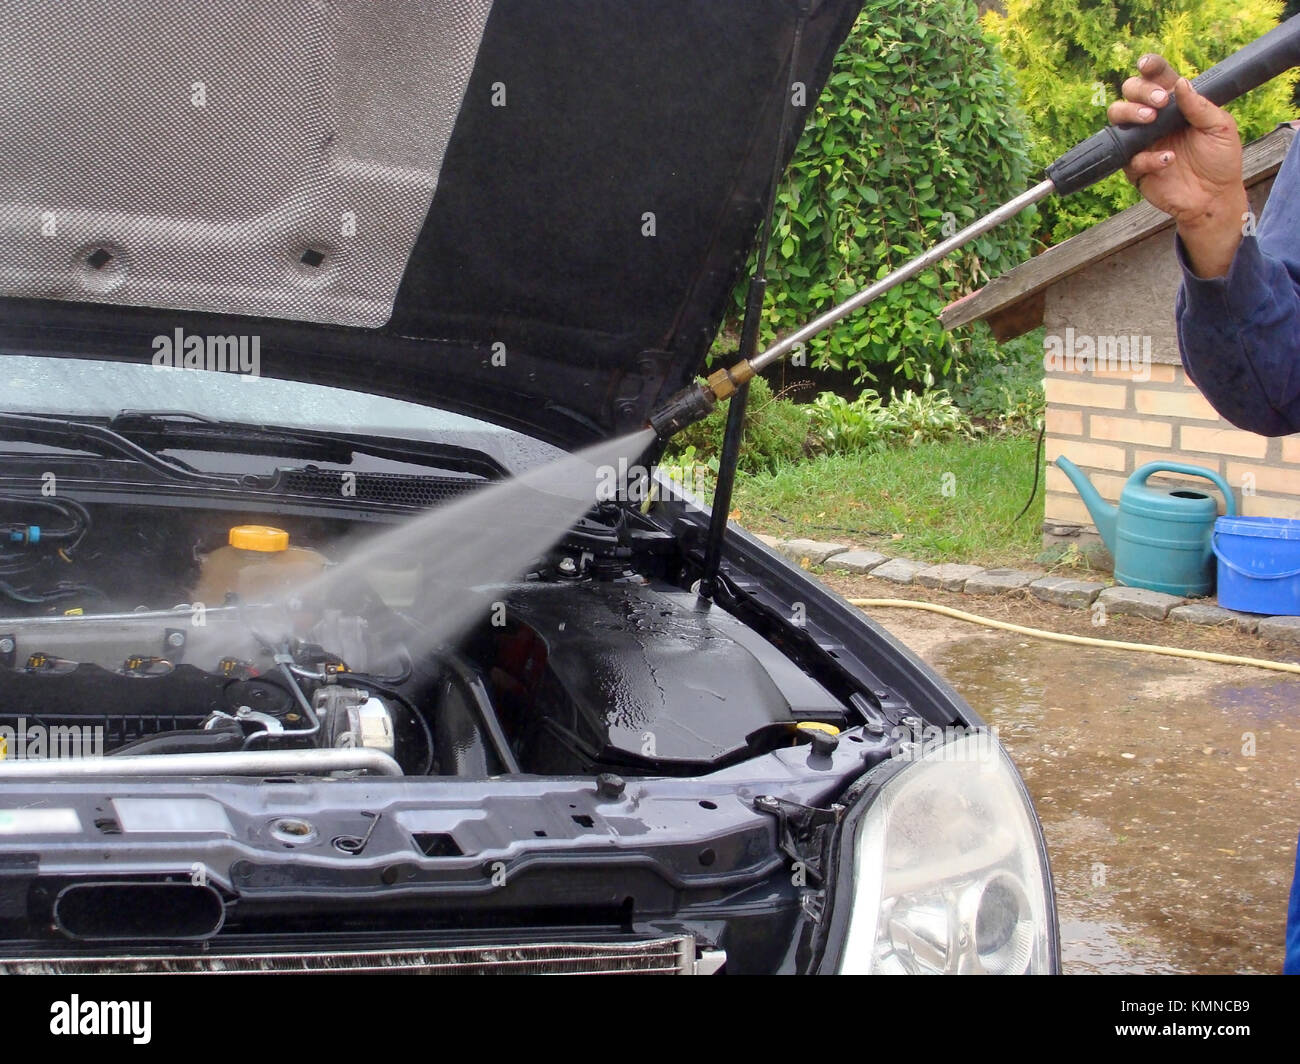 Nettoyage du moteur de voiture avec jet d'eau haute pression Photo Stock -  Alamy